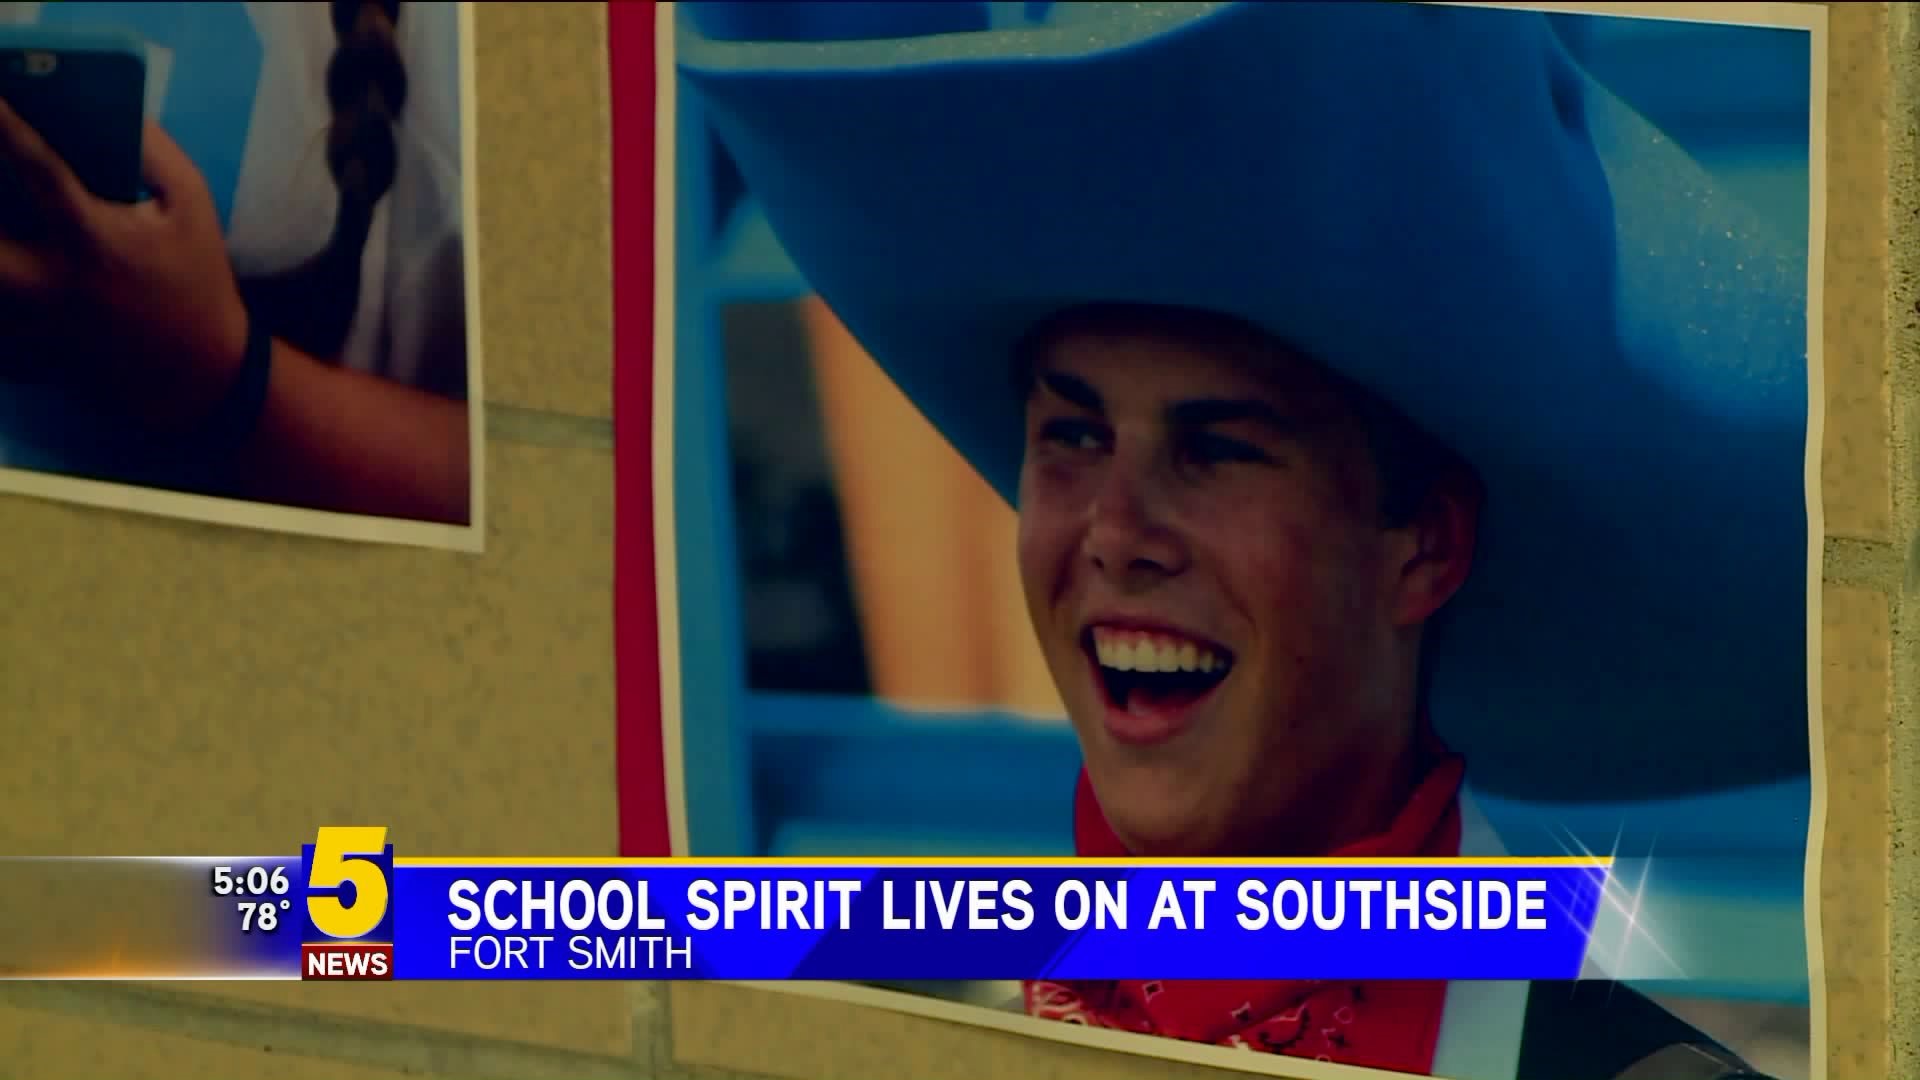 School Spirit Lives On At Southside